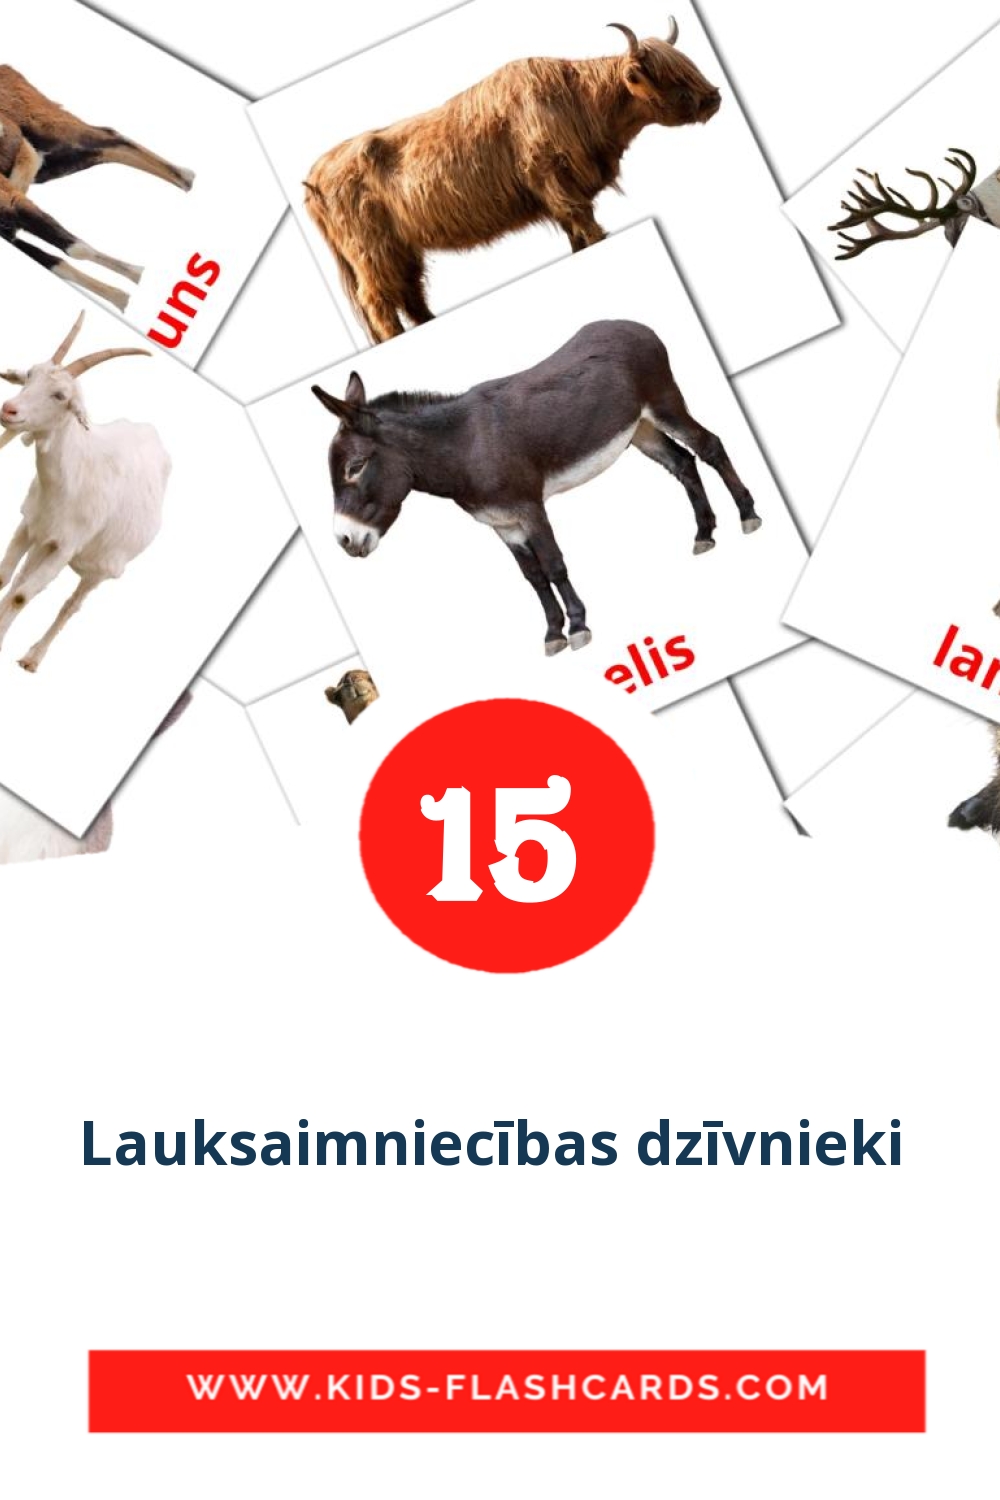 Lauksaimniecības dzīvnieki  на латышском для Детского Сада (15 карточек)